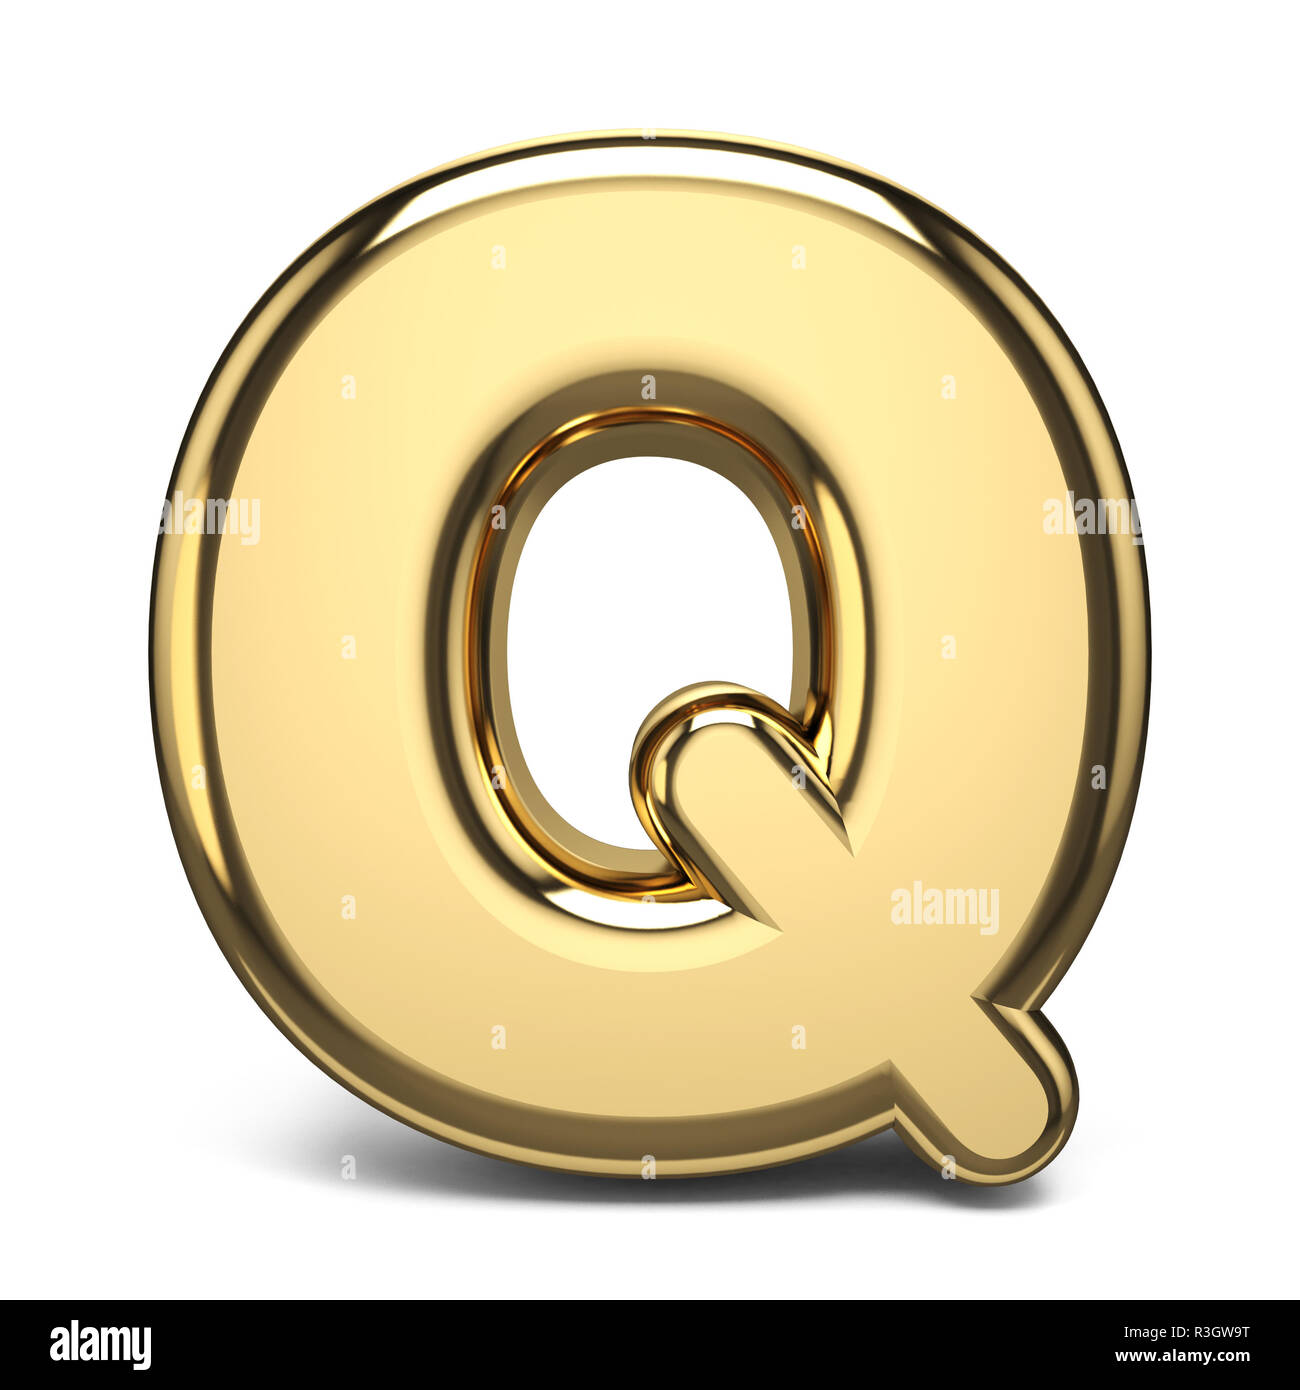 Golden font letter Q 3D render illustration isolated on white background Stock Photo